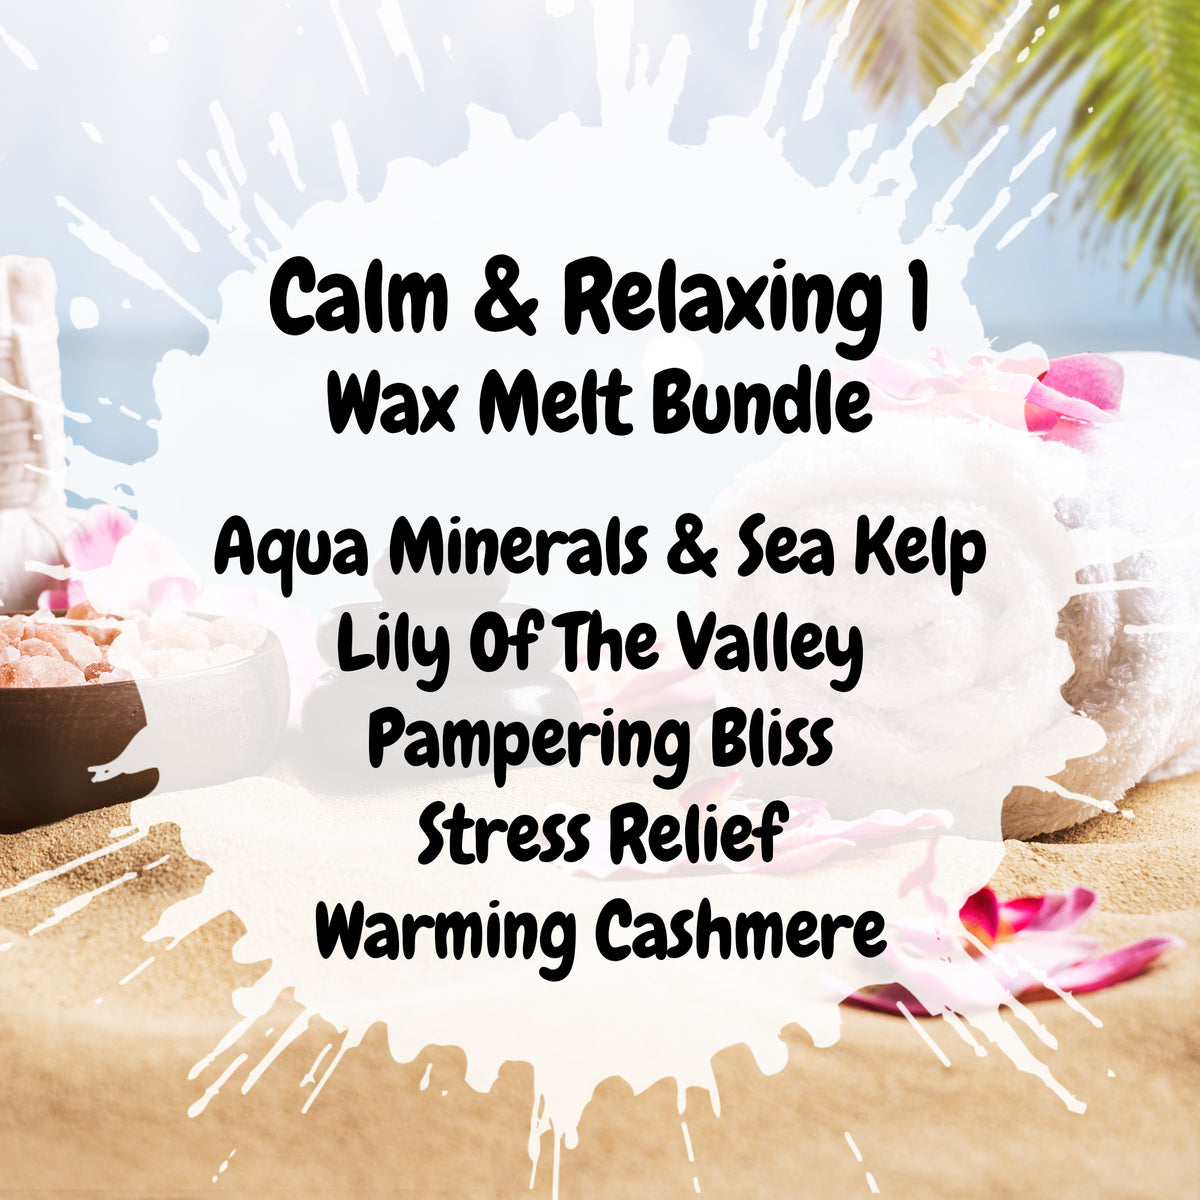 Calm & Relaxing 1 Wax Melt Bundle